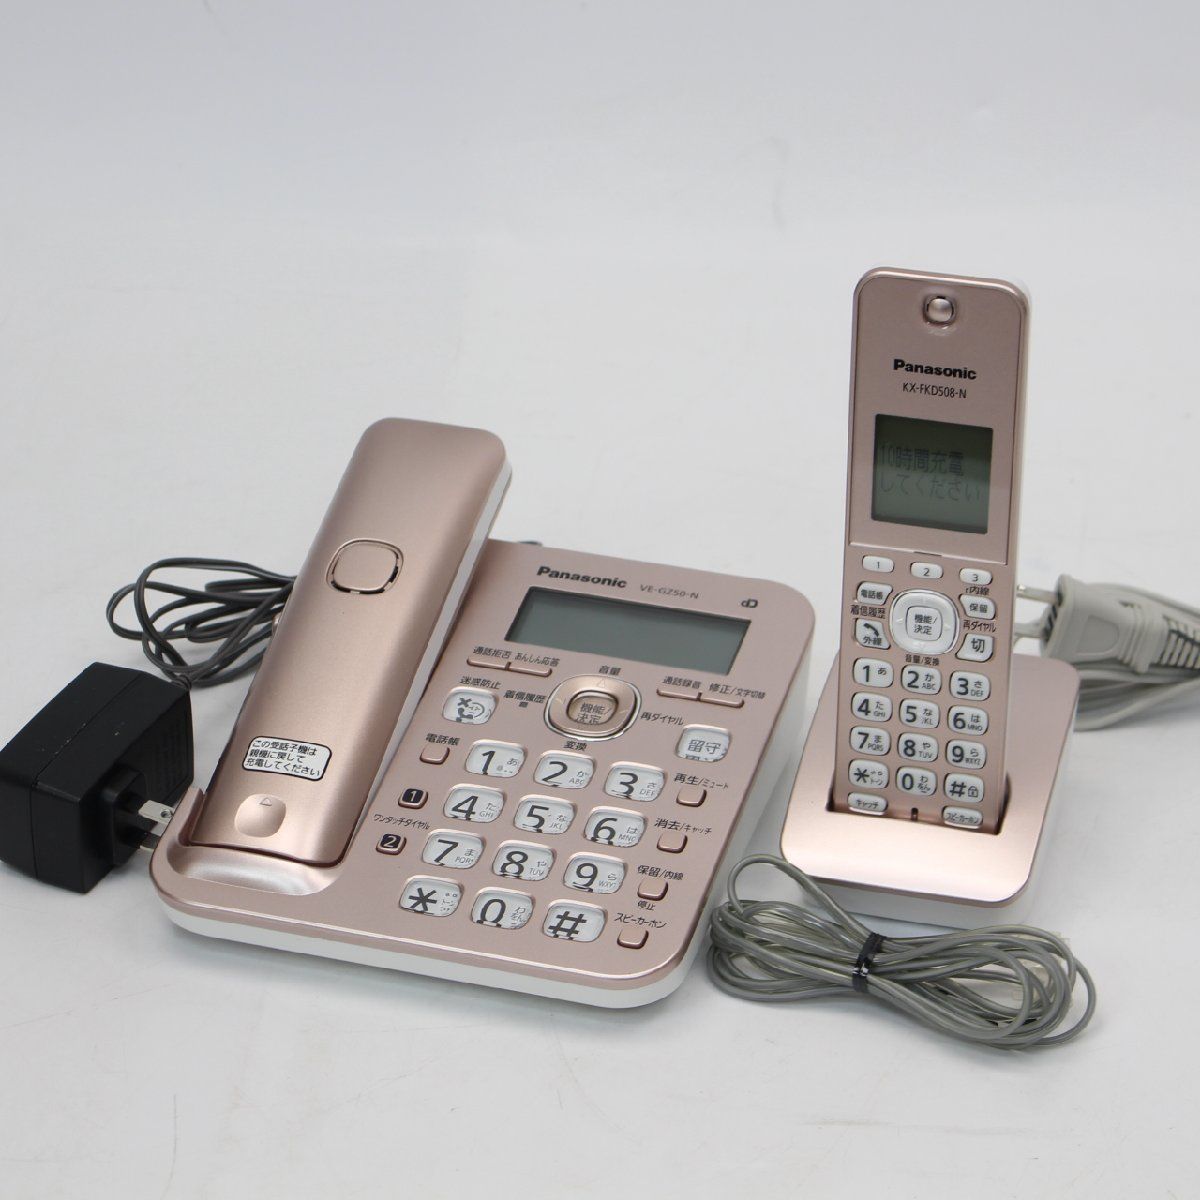 448)パナソニック 電話機 RU・RU・RU VE-GZ50DL-N - 【ショップ情報要